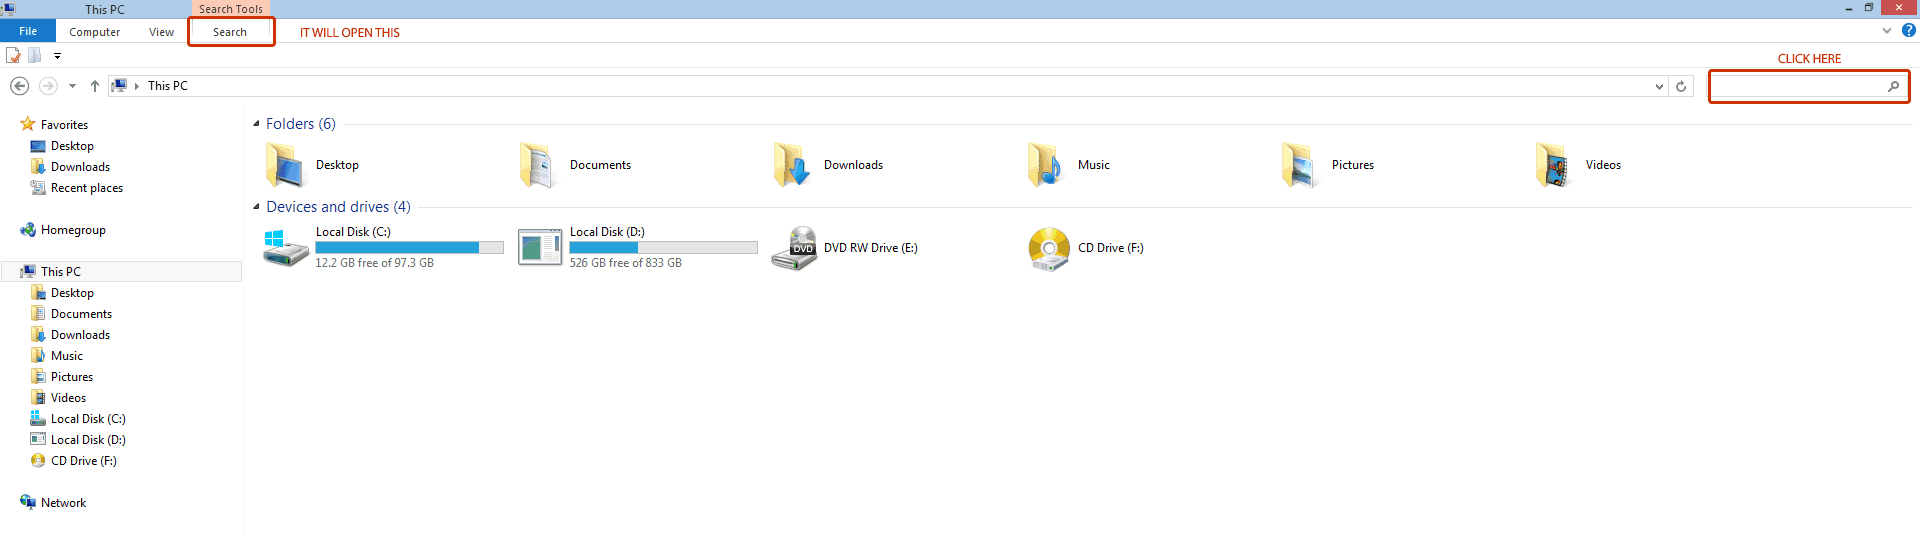 How to delete empty folders in Windows 10